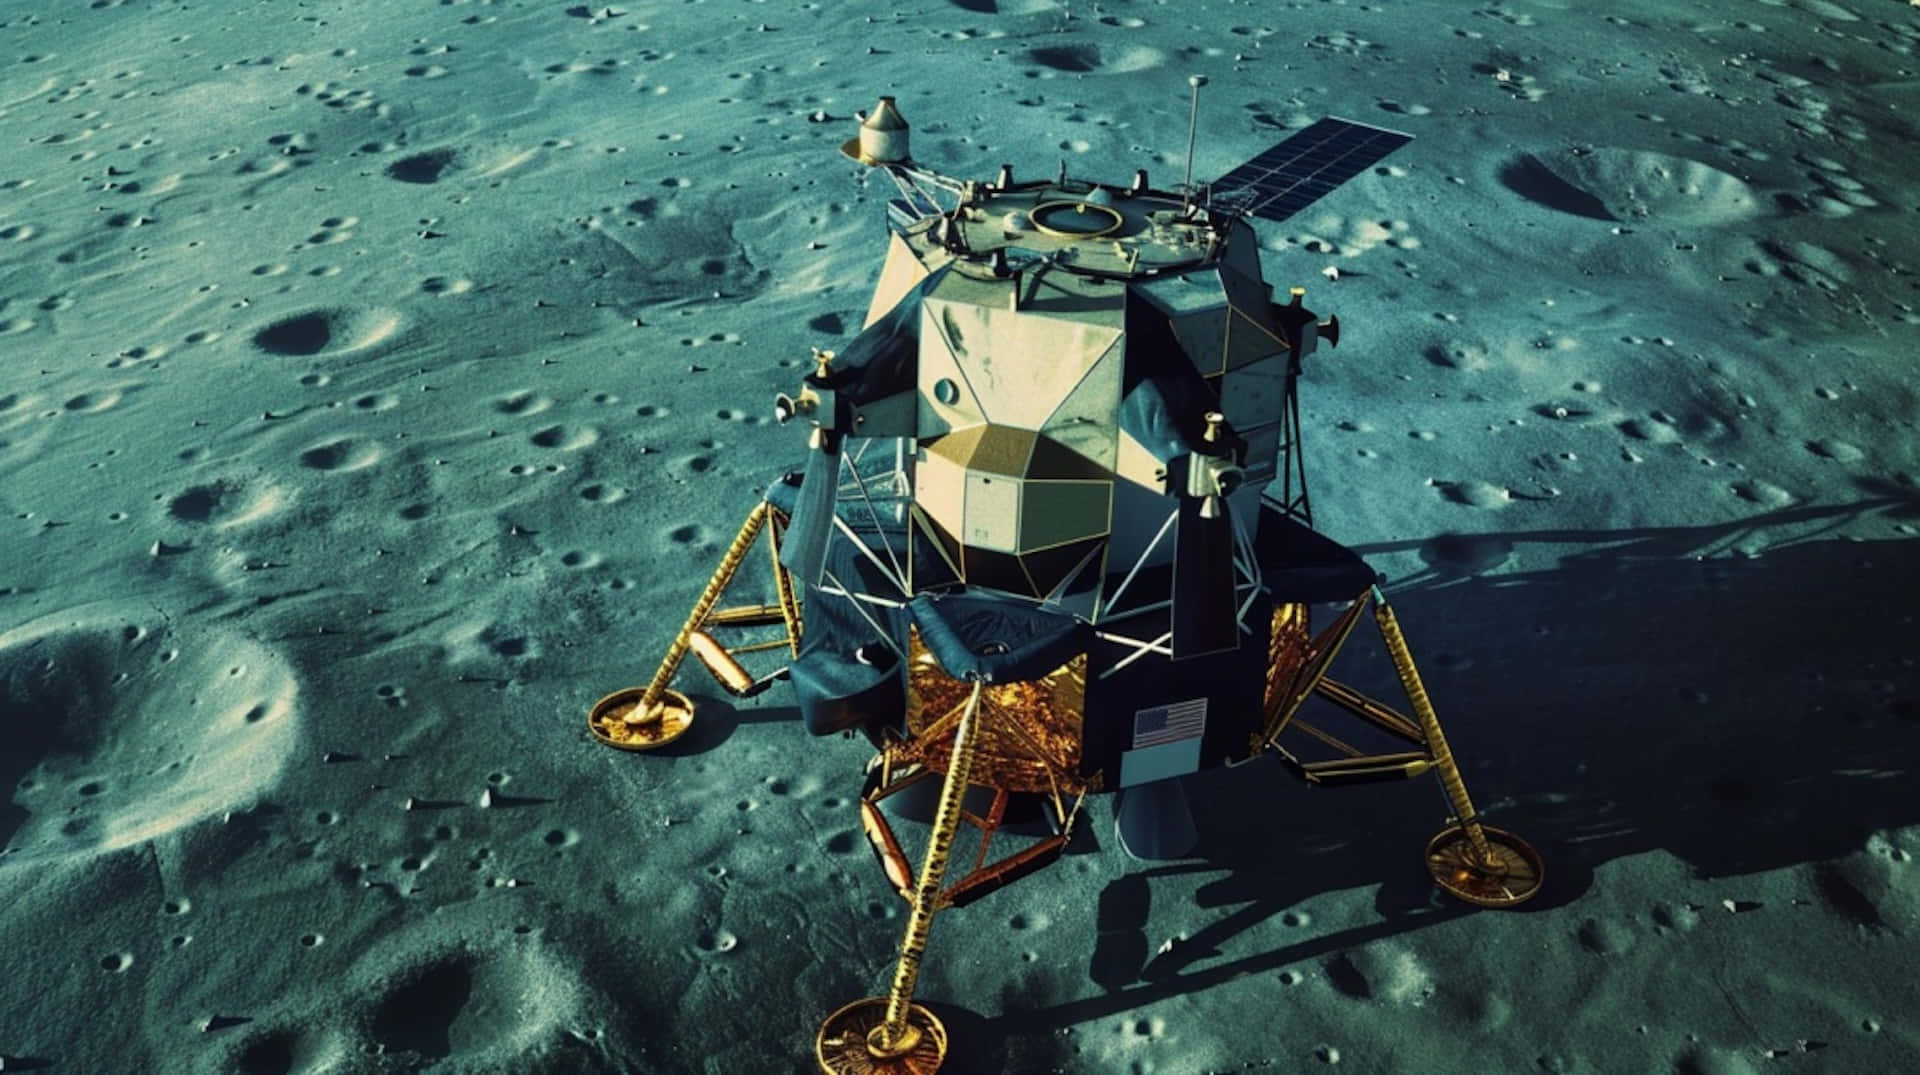 Apollo Lunar Module On Moon Surface Wallpaper